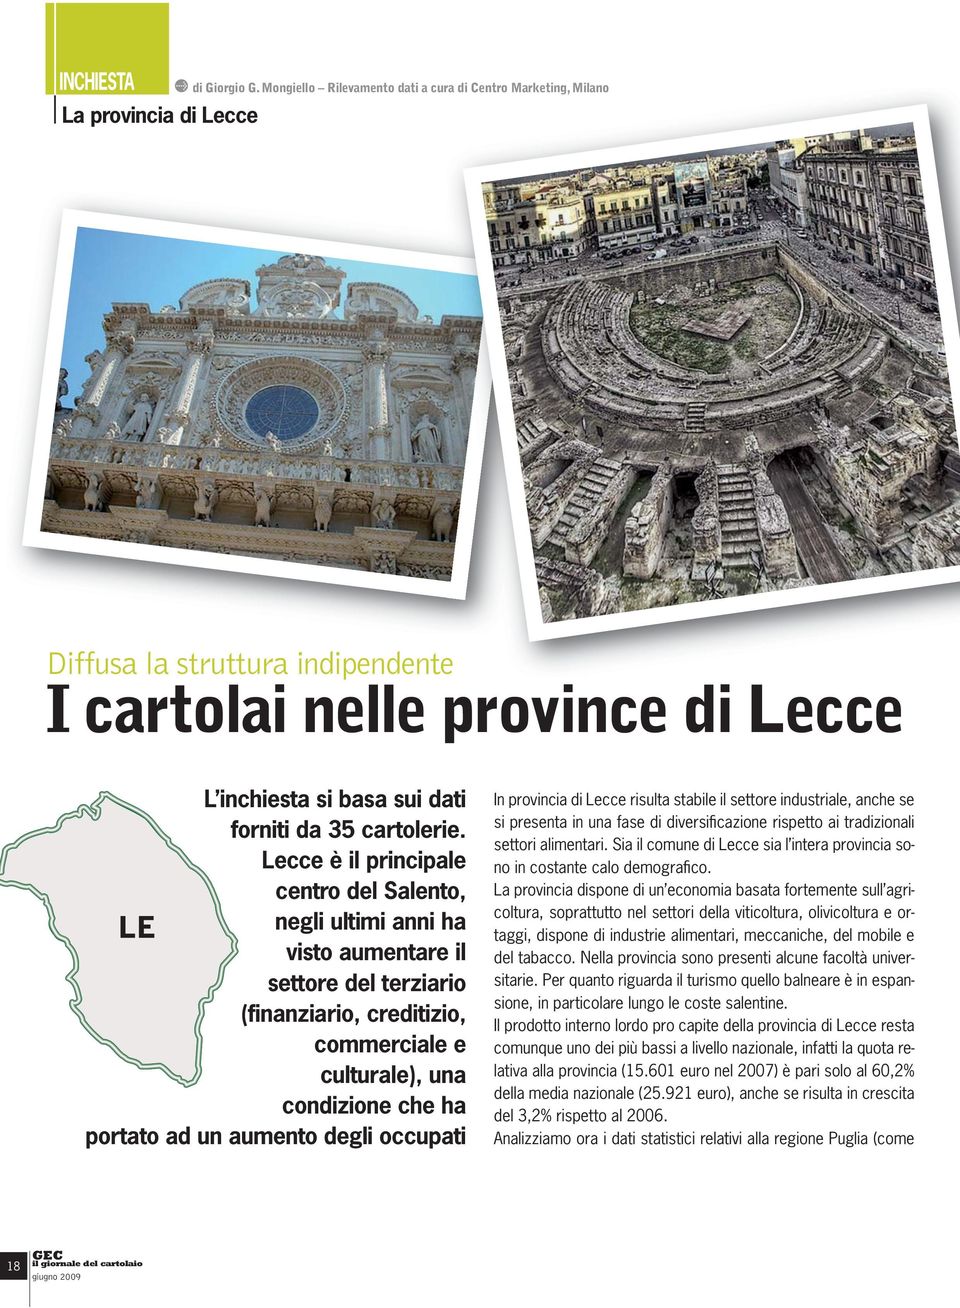 Lecce è il principale centro del Salento, negli ultimi anni ha visto aumentare il settore del terziario (finanziario, creditizio, commerciale e culturale), una condizione che ha portato ad un aumento